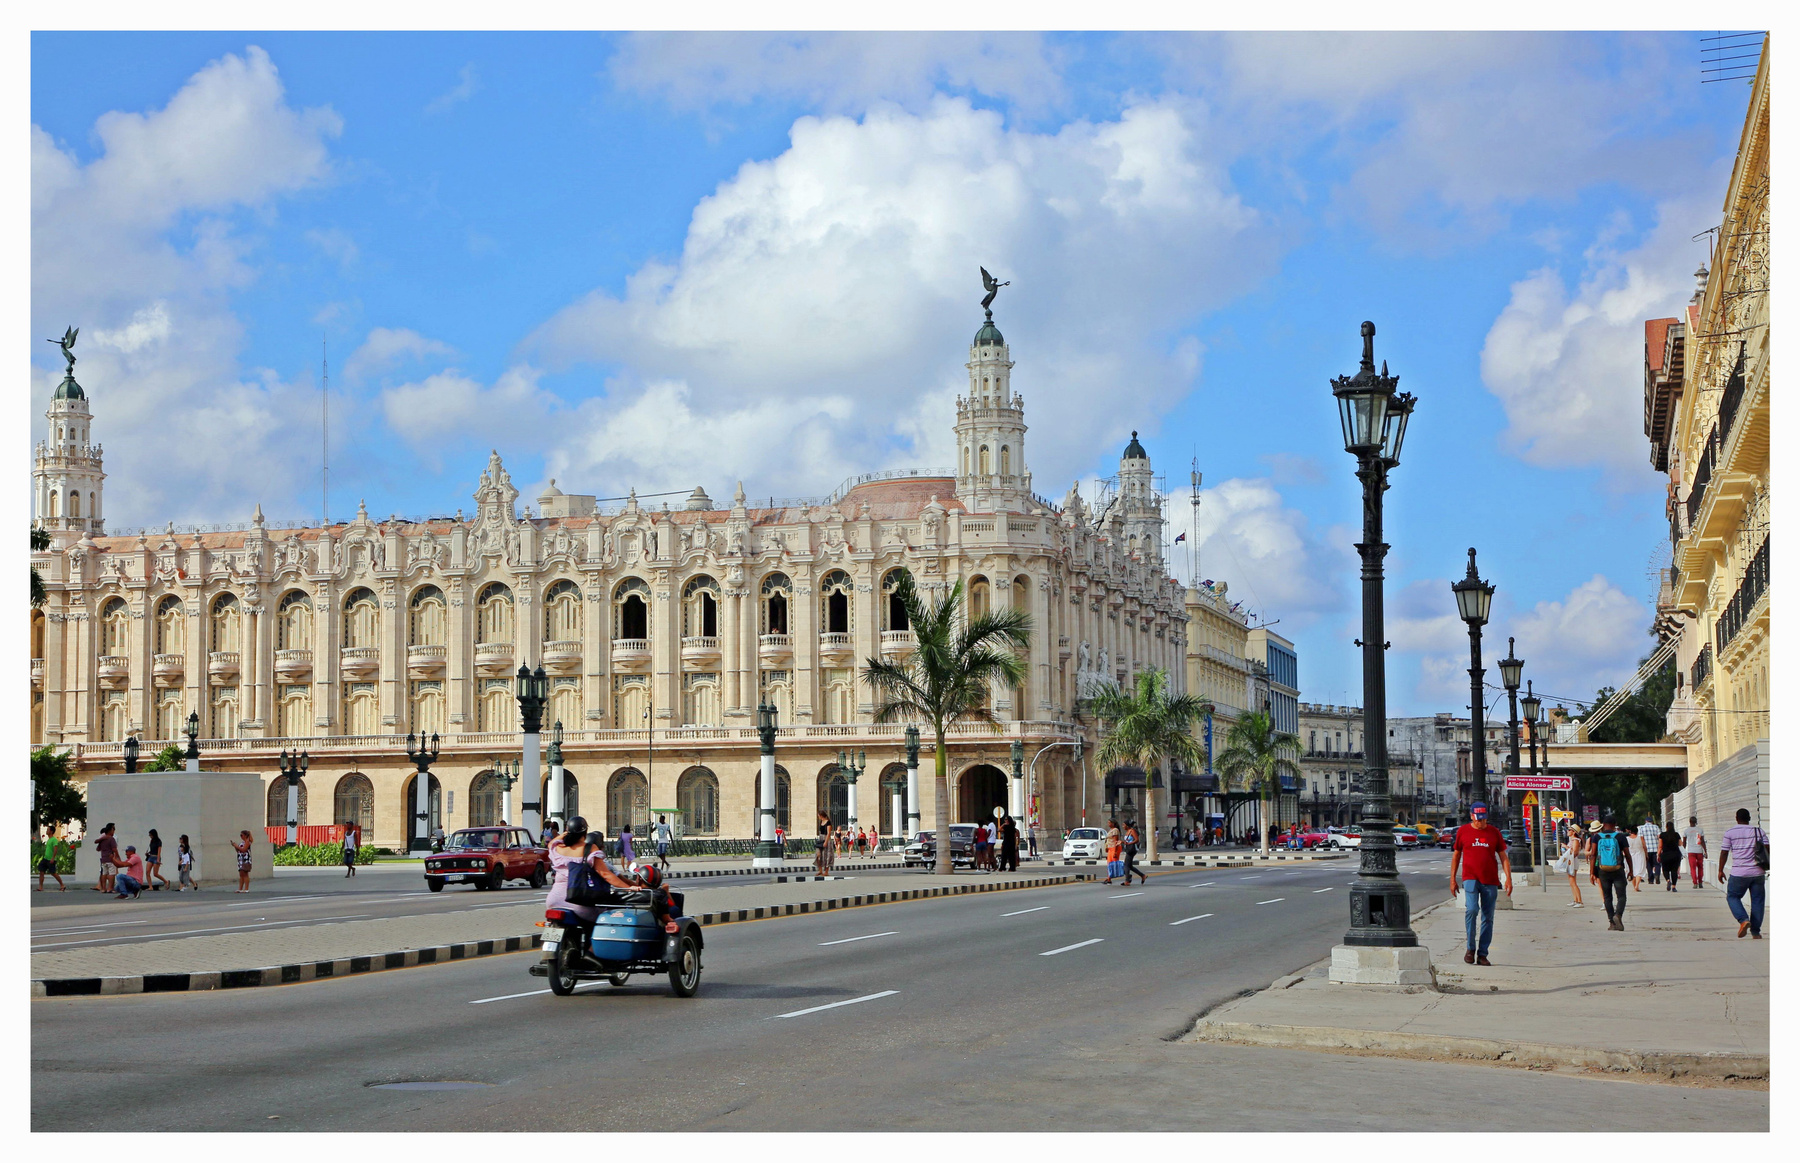 Gran Teatro de La Habana “Alicia Alonso” cuba la habana vieja libre isla bonita cubanos